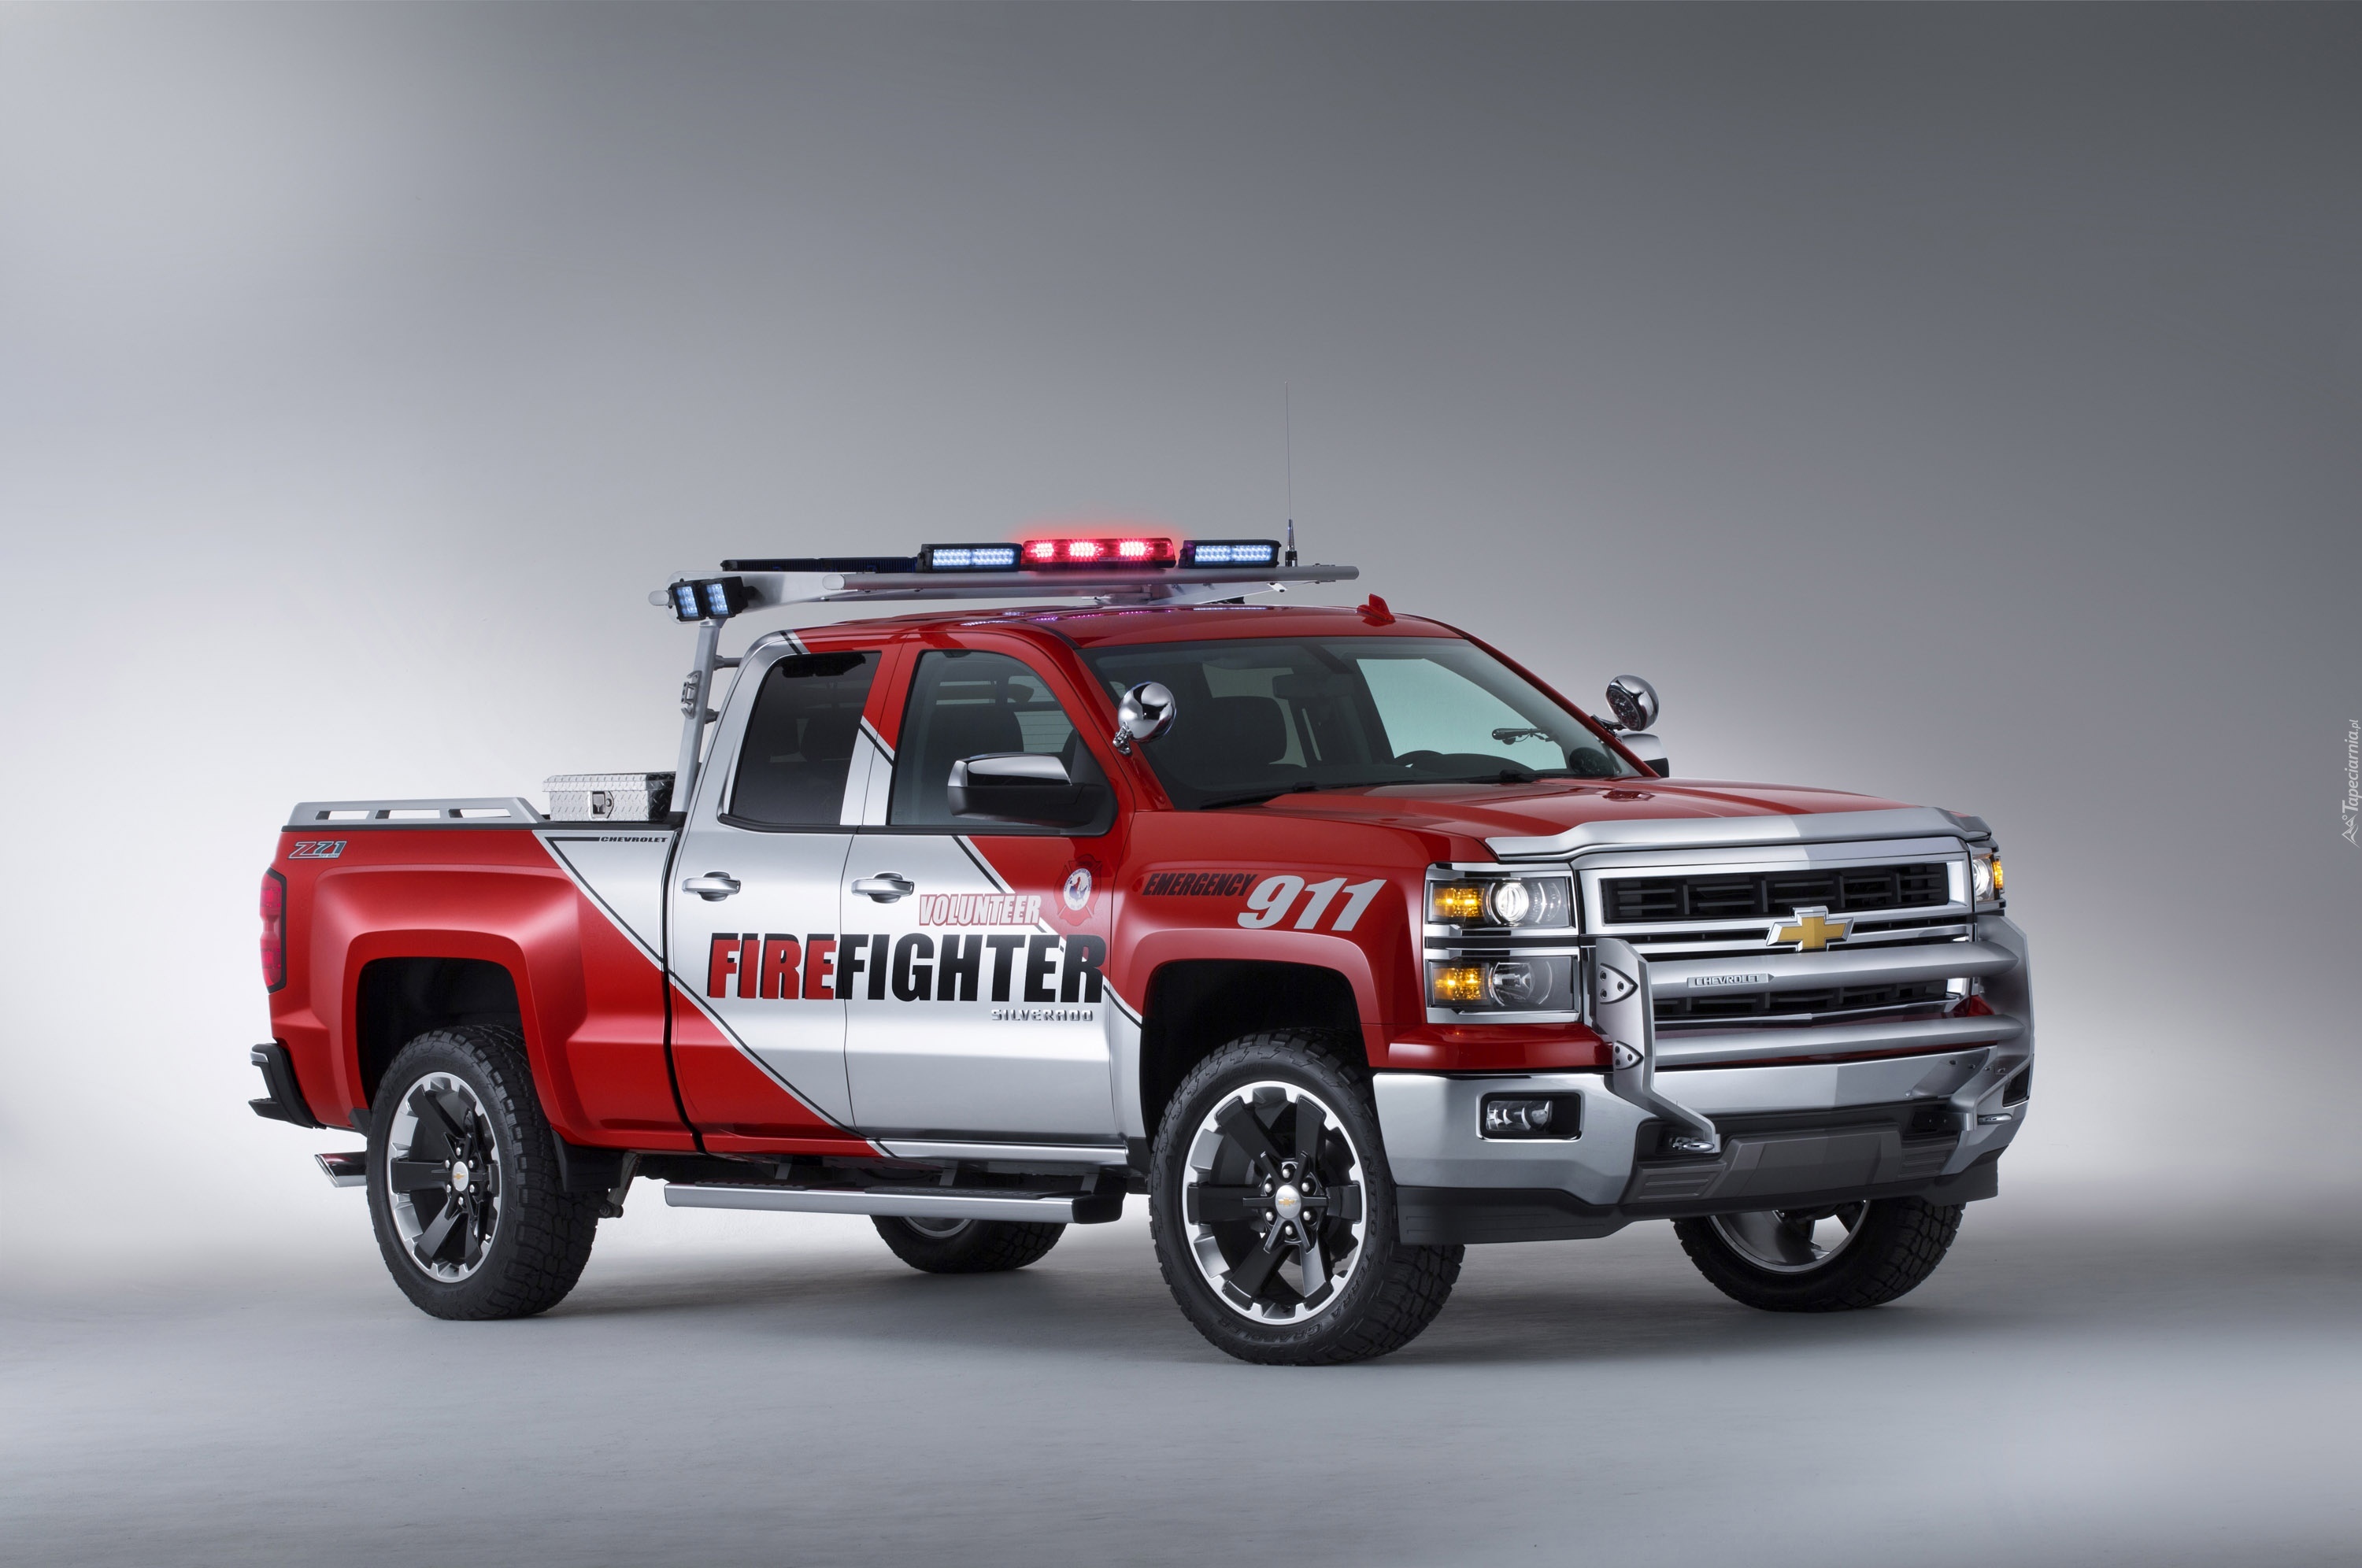 Chevrolet Silverado, Volunteer Firefighters Concept